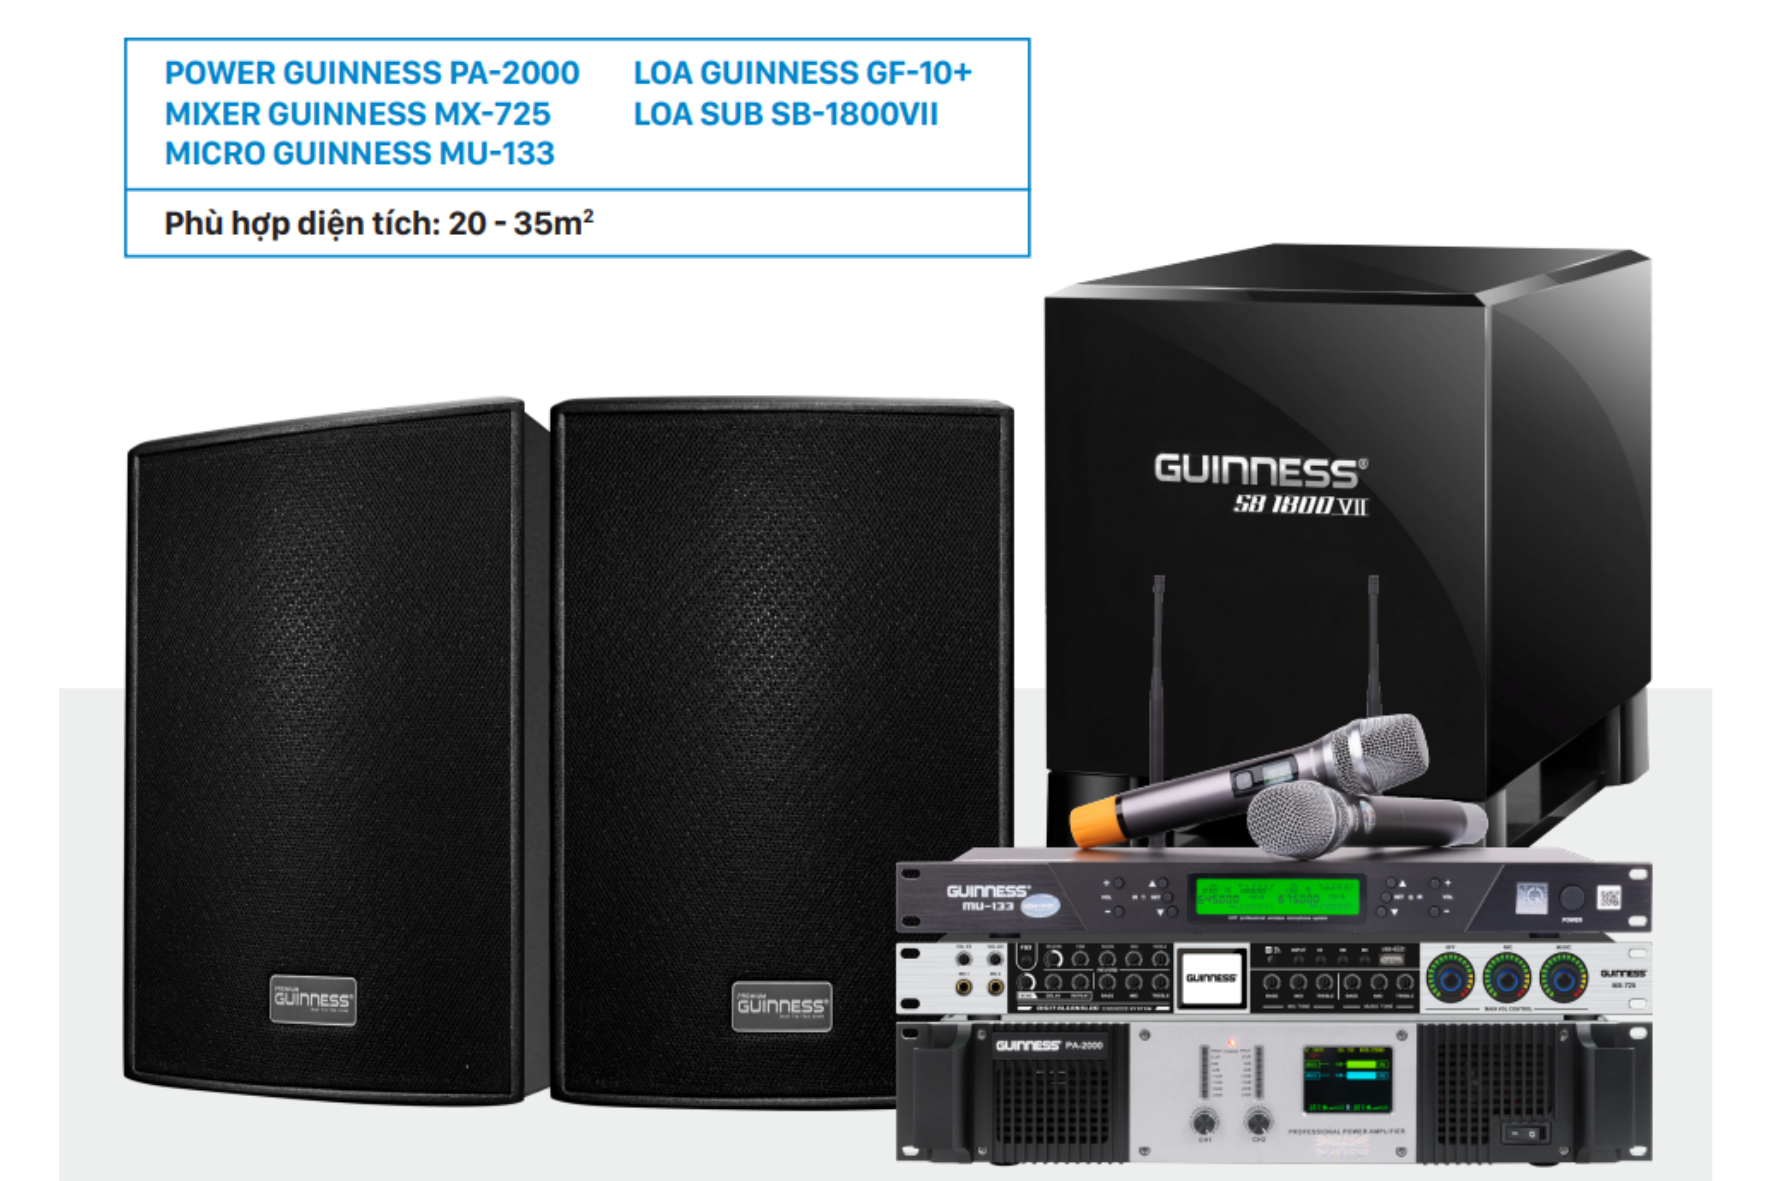 Dàn Karaoke Guinness chuyên nghiệp dành cho diện tích 20 – 35m2